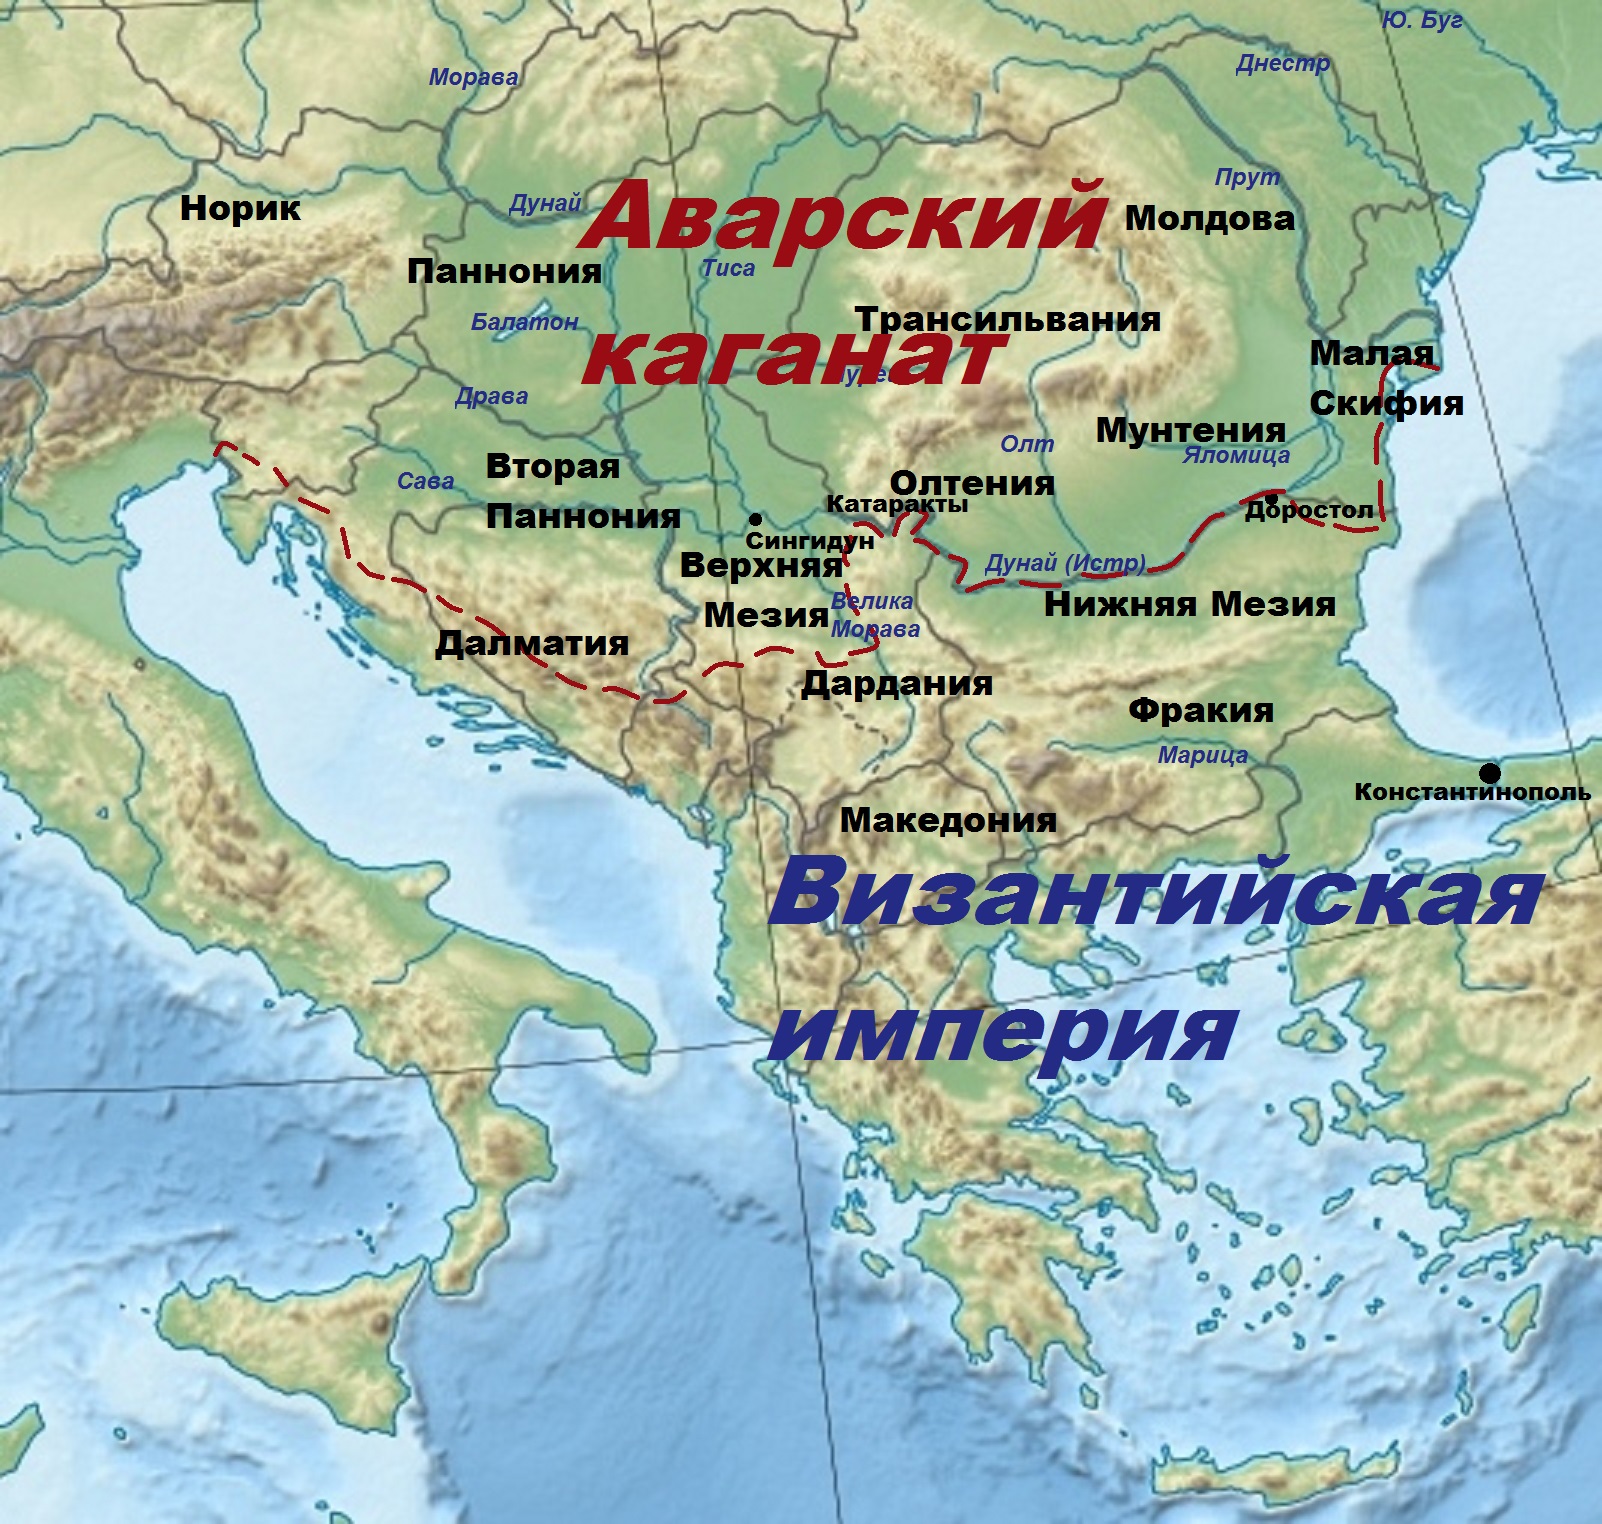 Приблизительные границы Византийской империи и Аварского каганата к концу 6 века нашей эры